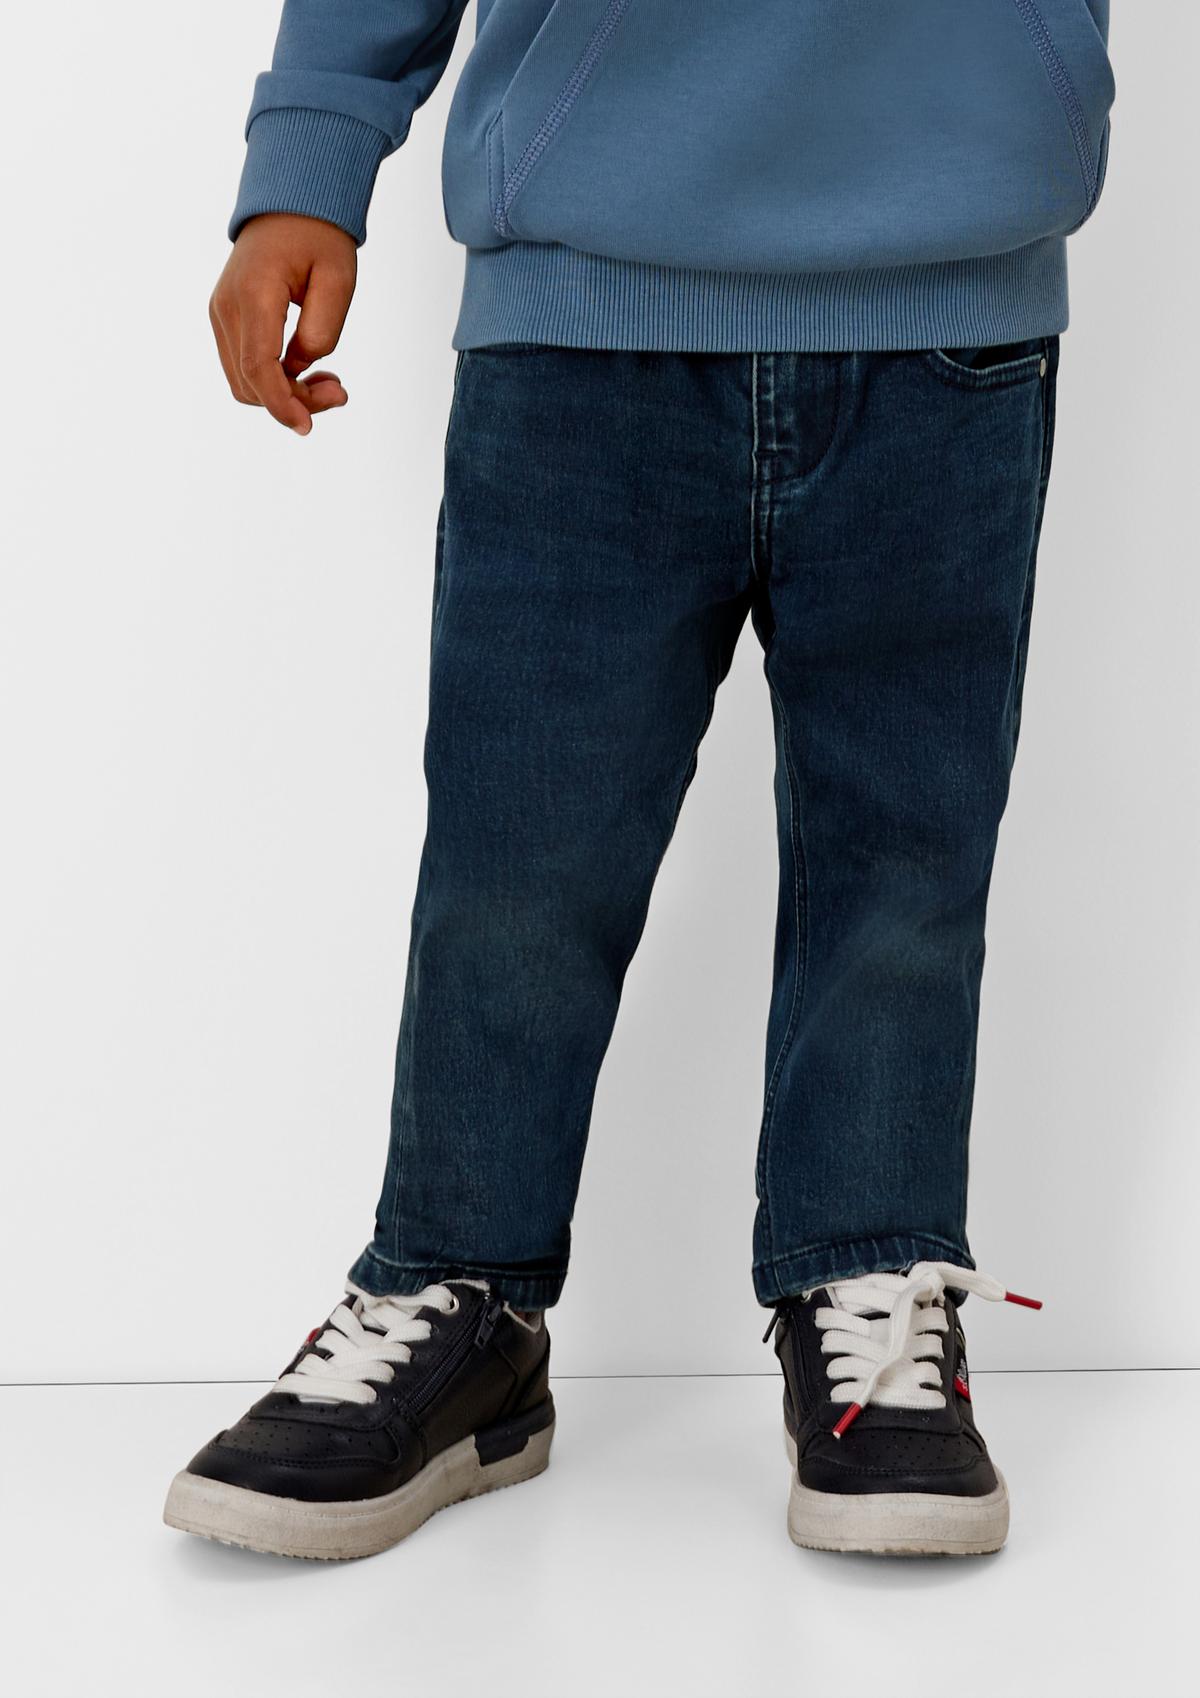 s.Oliver Pelle jeans / regular fit / mid rise / straight leg